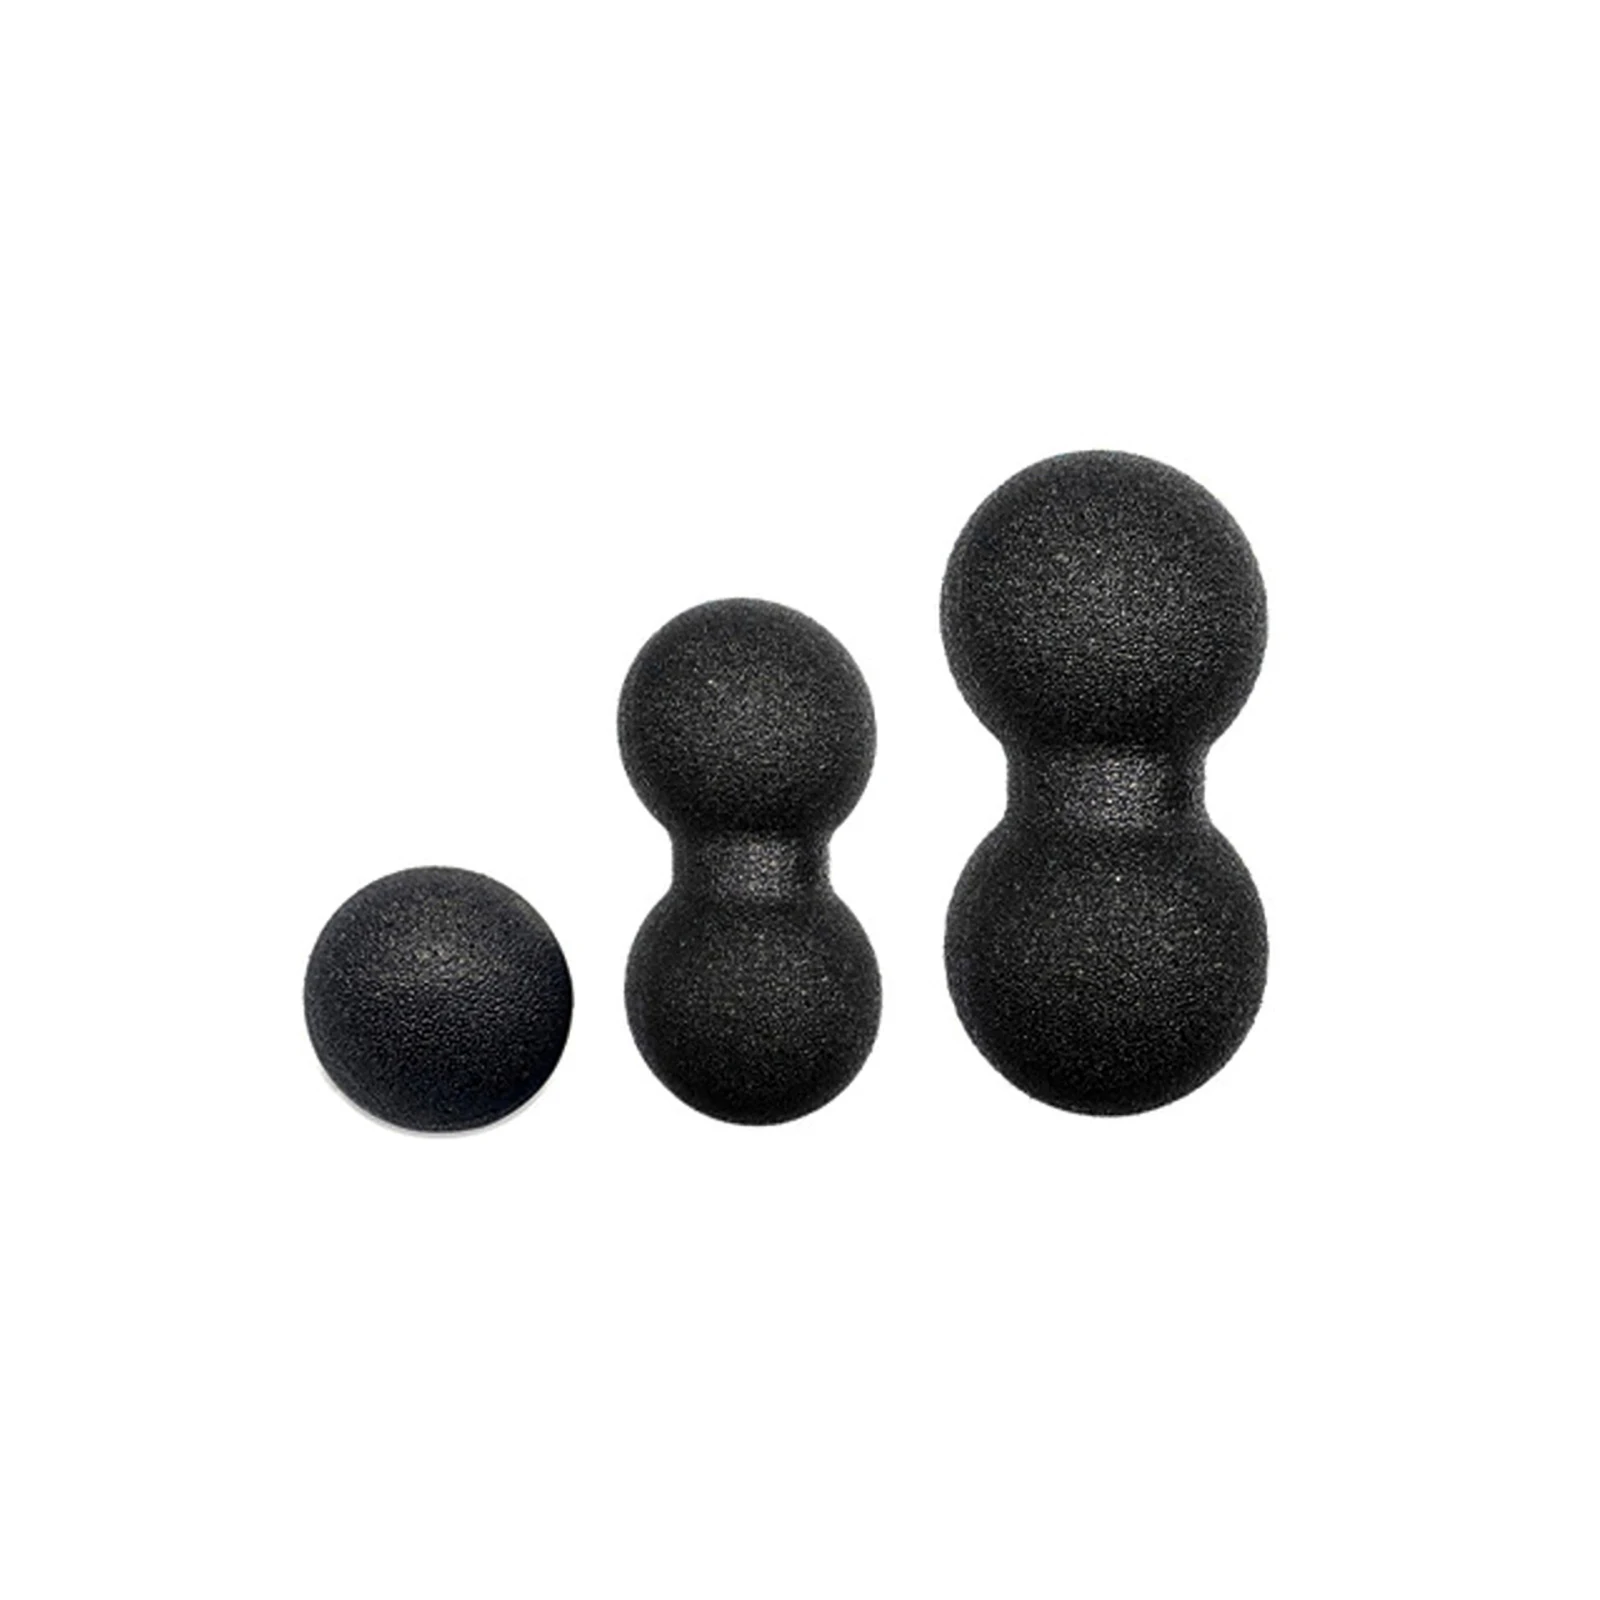 

Мяч Myofascia в форме арахиса, массажный мяч высокой плотности, легкий, для фитнеса, массажа тела, йоги, упражнений для снятия боли